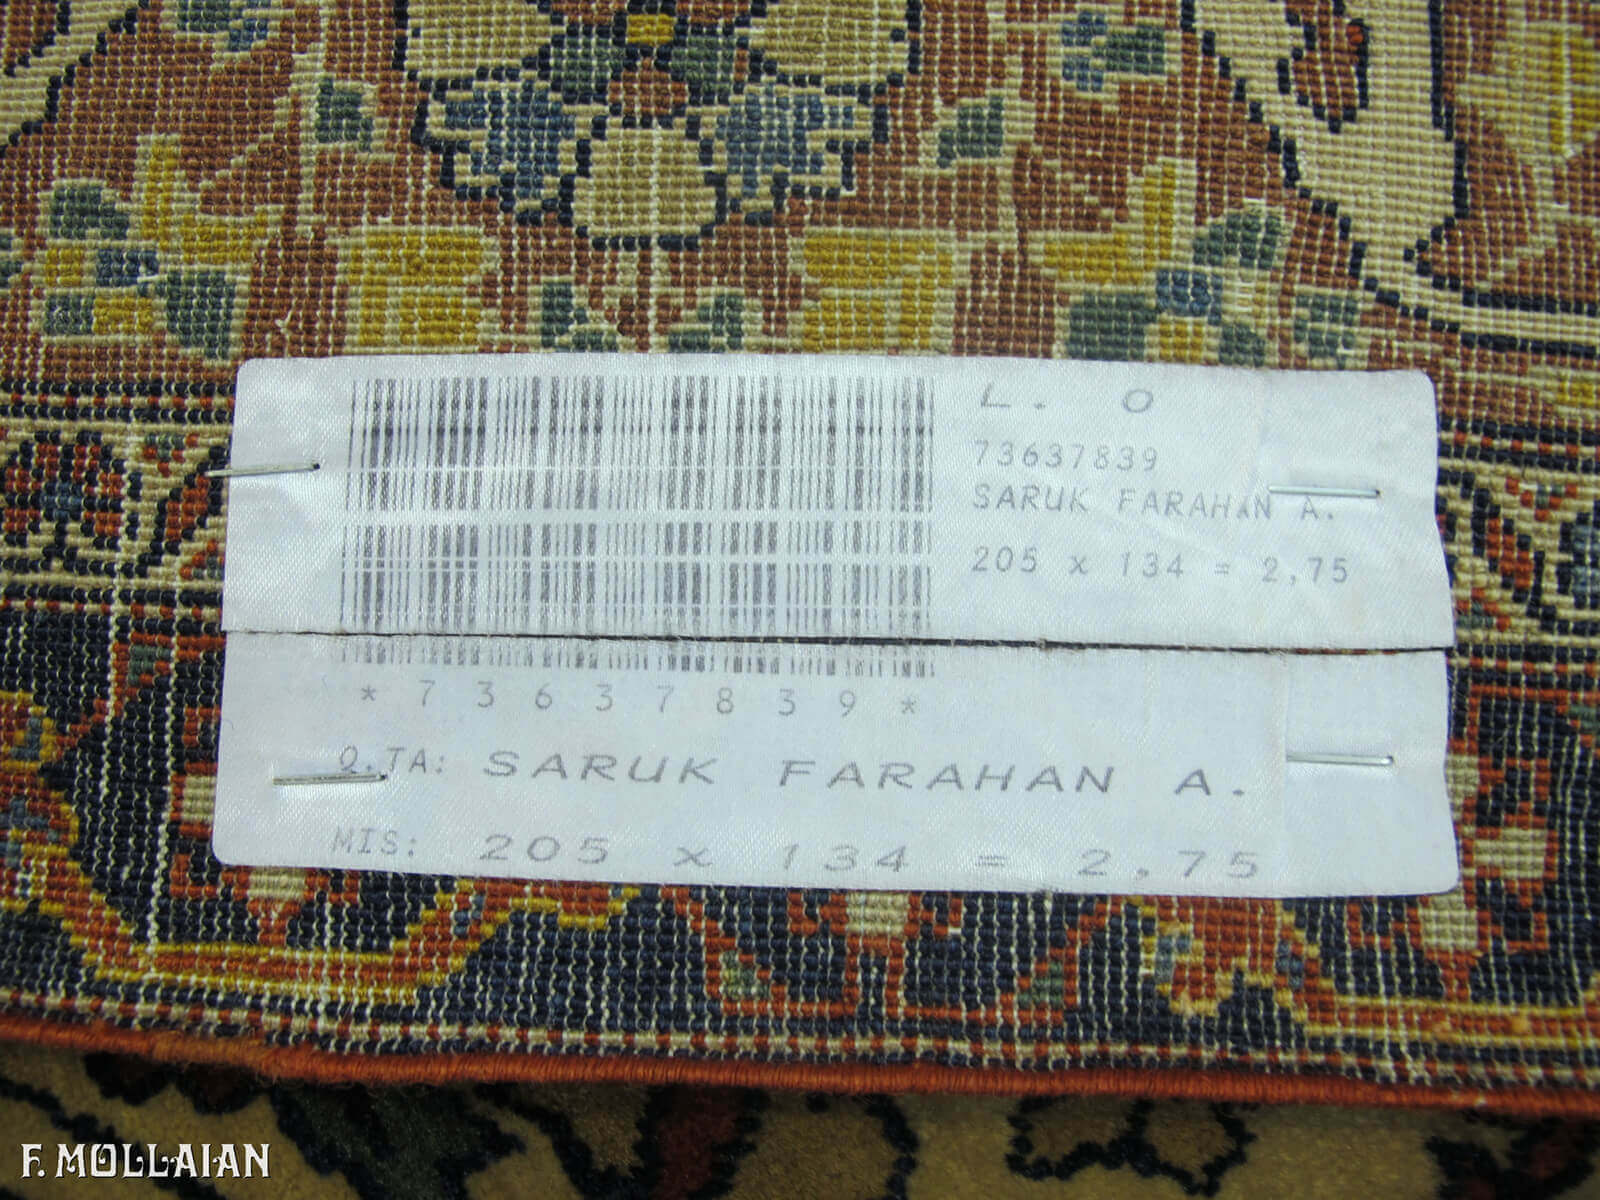 Tapis Persan Antique Saruk Farahan n°:73637839